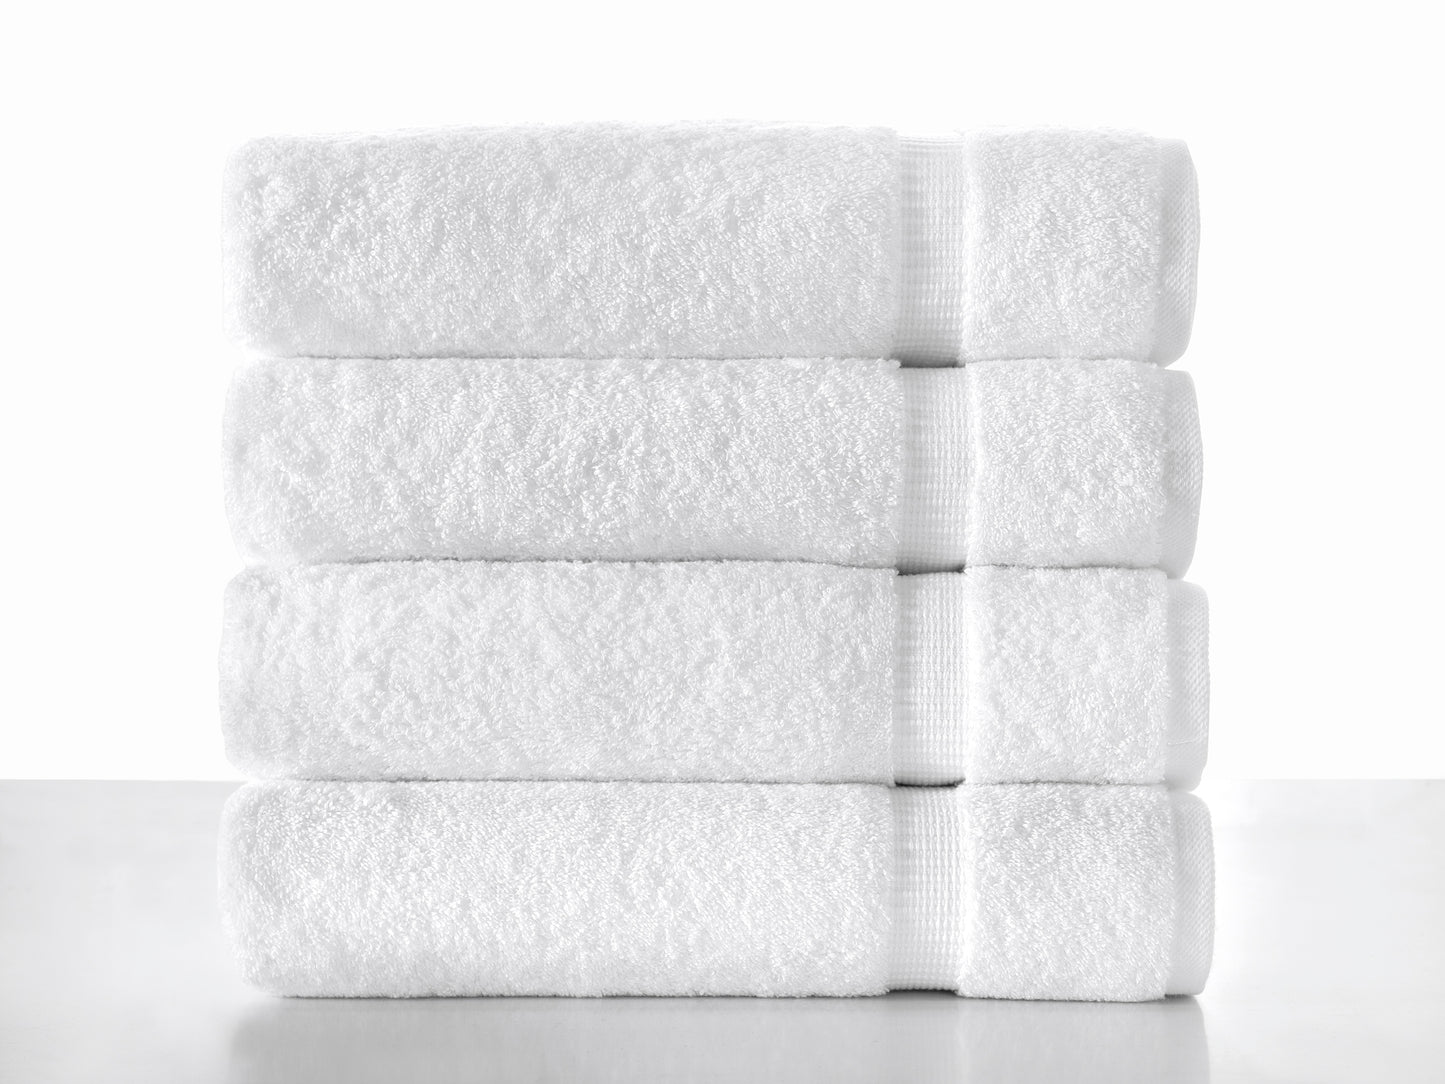 Cambridge Turkish Cotton Bath Towels - 4 Pieces